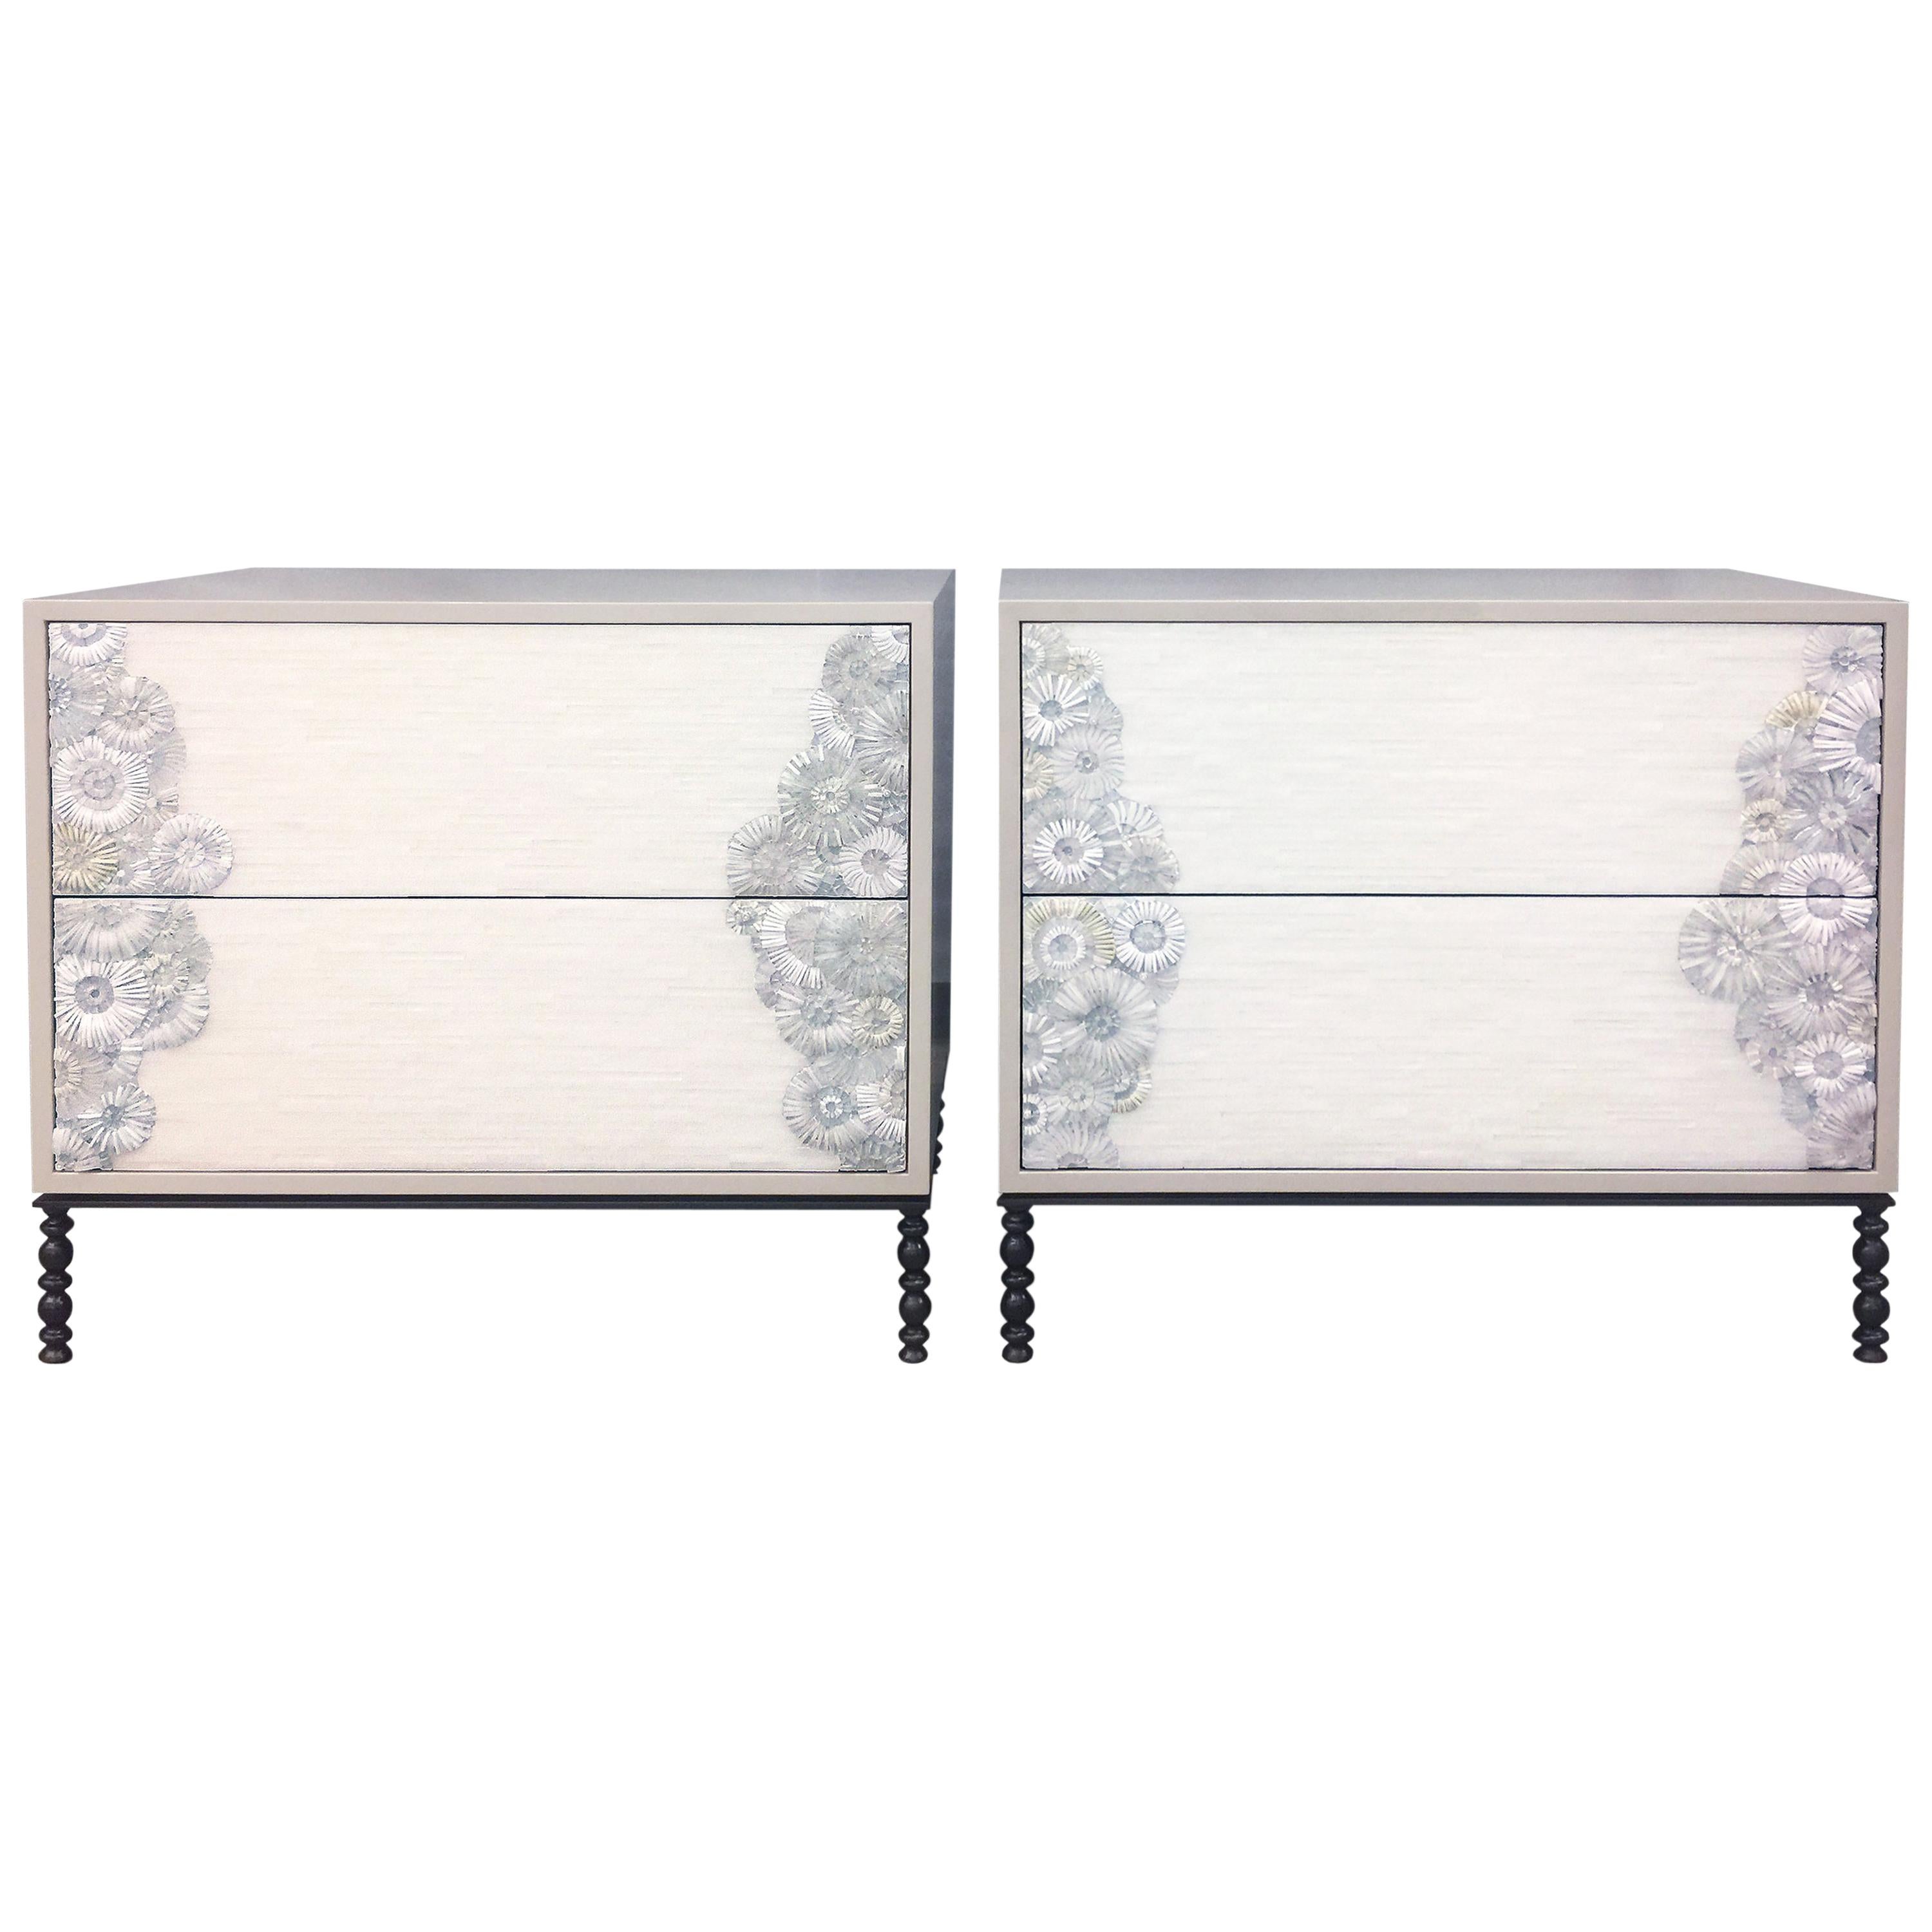 Table de nuit moderne en verre blanc soufflé avec finition gris brumeux par Ercole Home